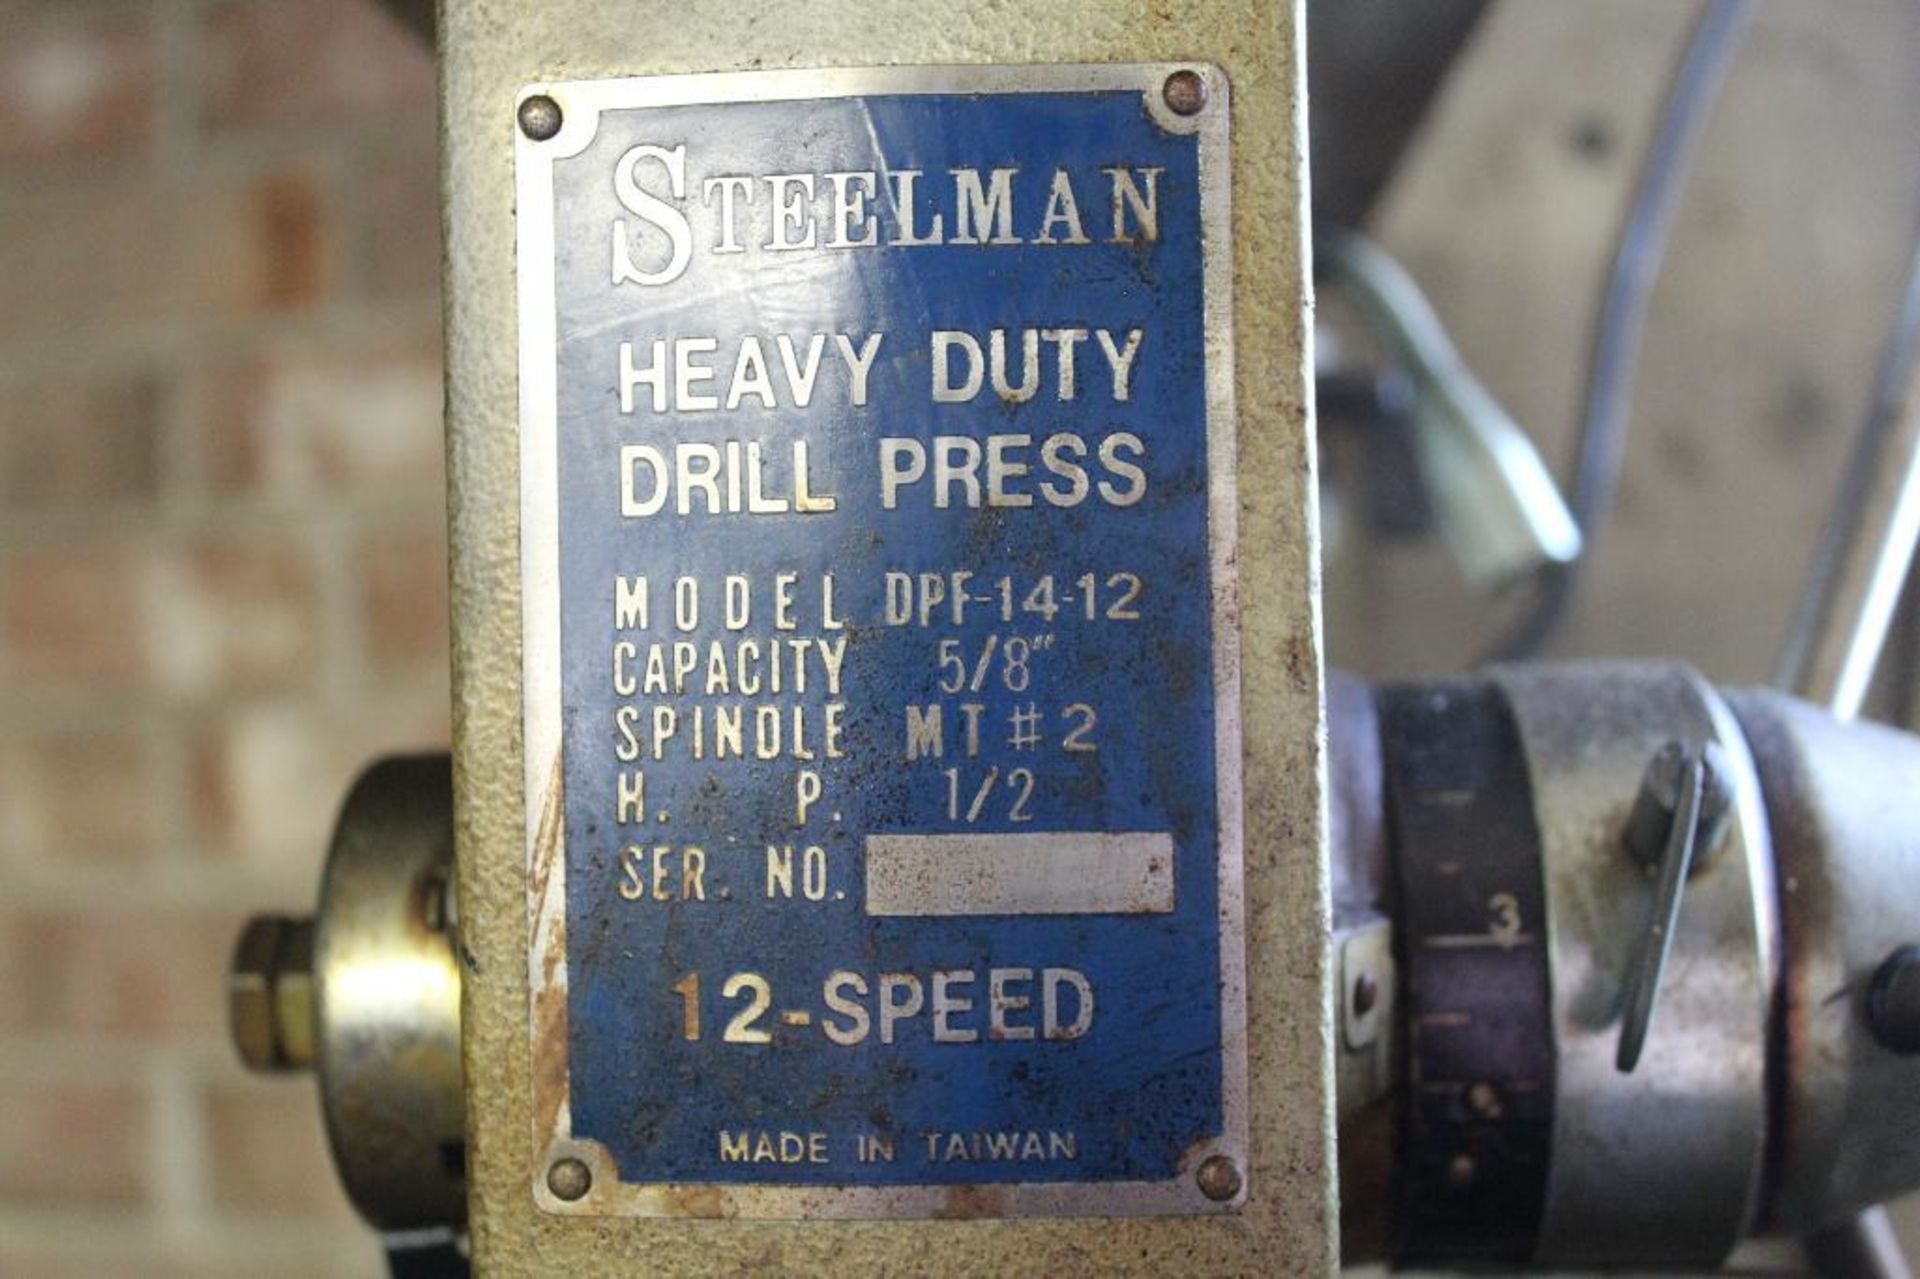 Steelman DPF-14-12 14" drill press - Image 5 of 5